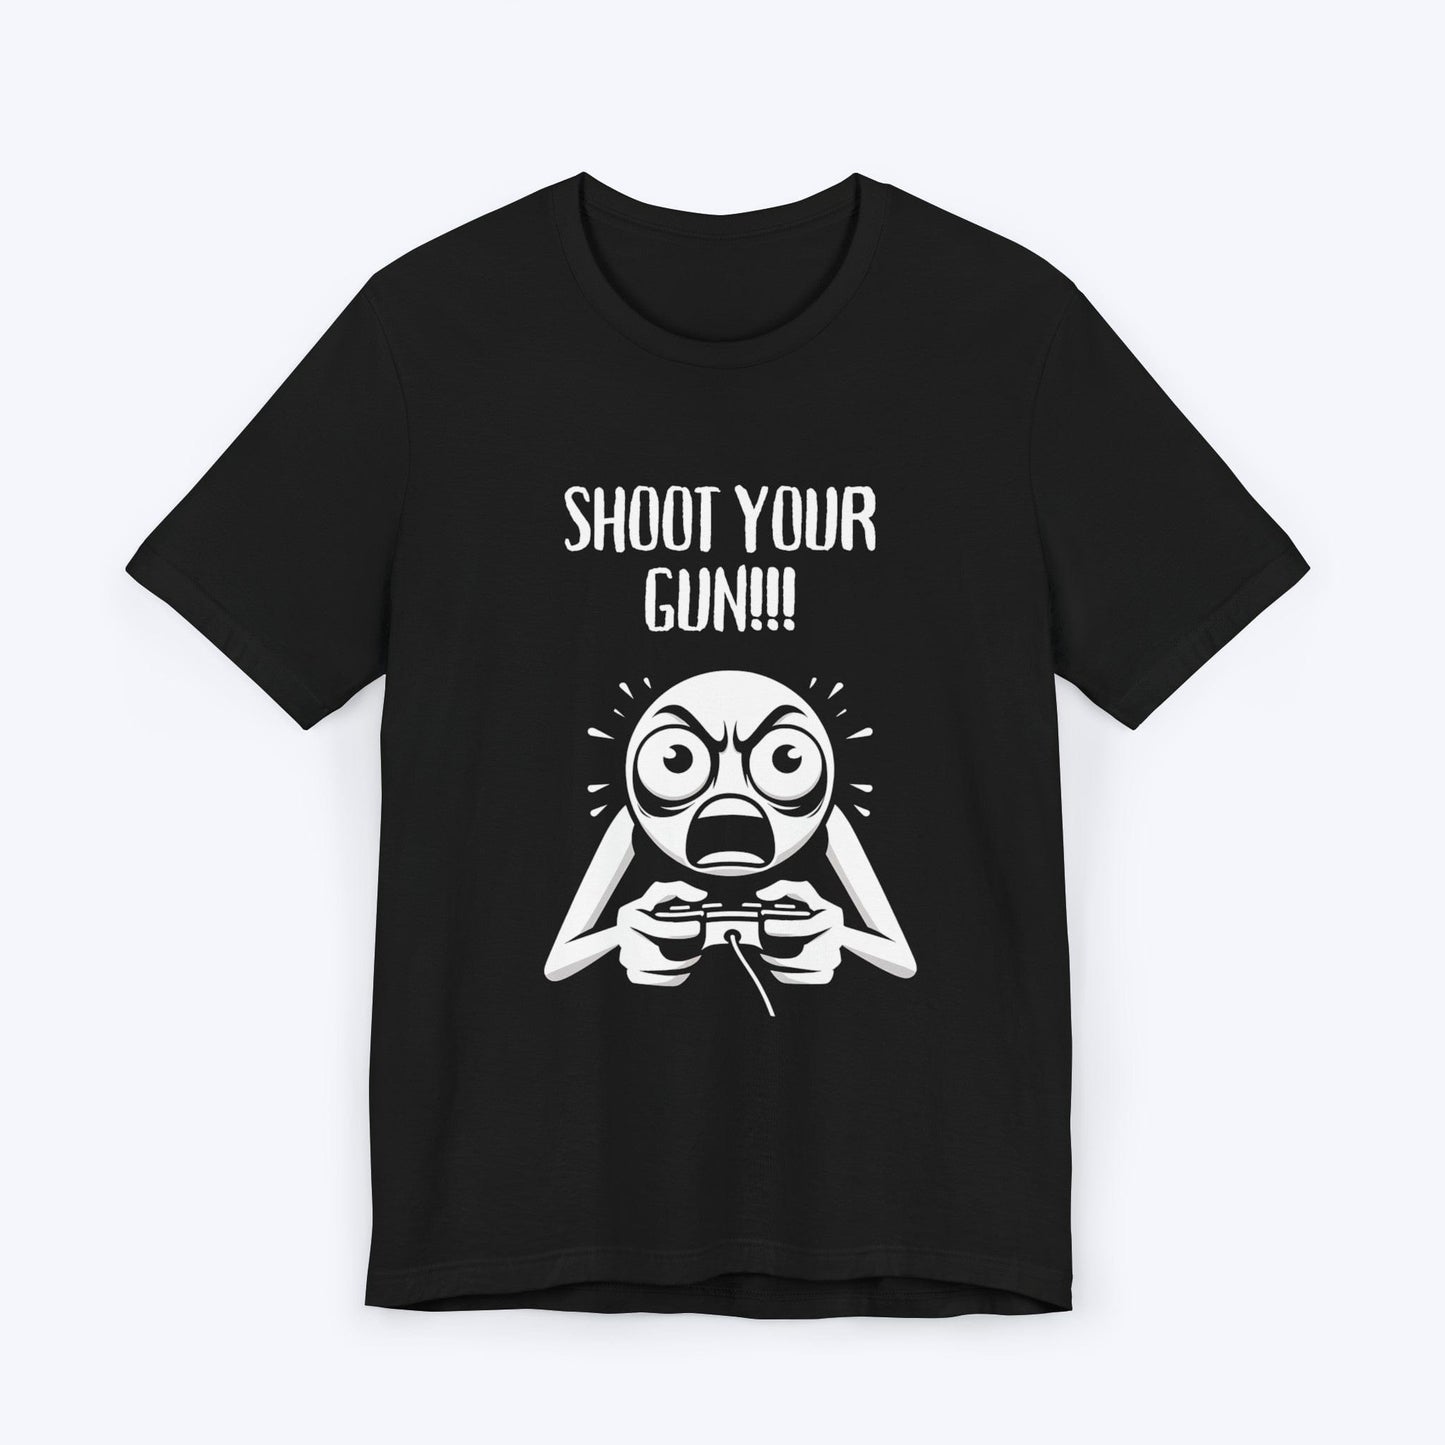 T-Shirt Black / S Fire, Aim, Ready Gaming T-shirt